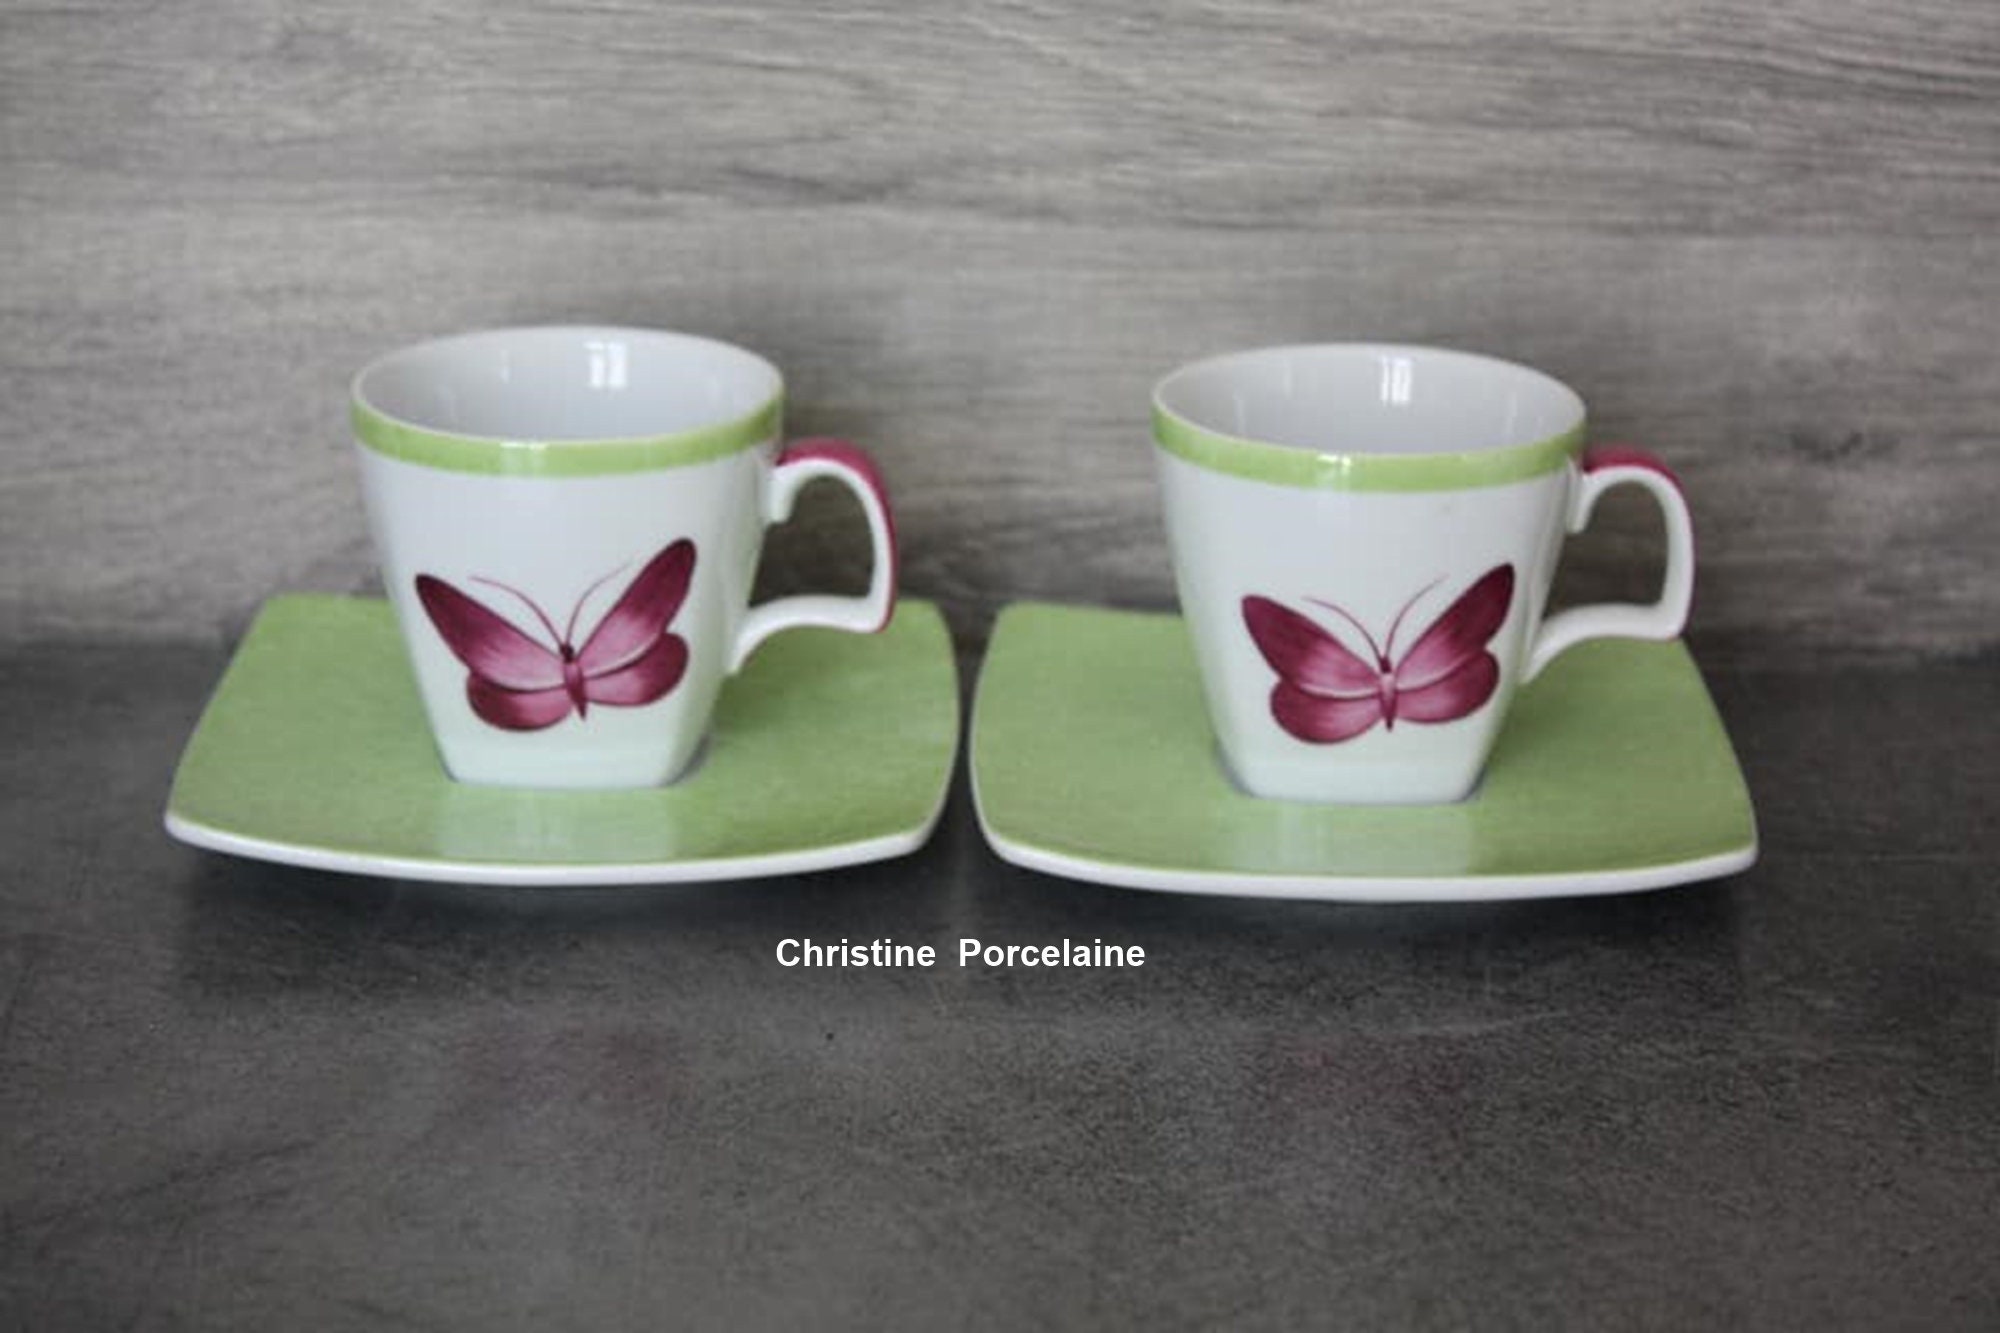 Duo de Tasses à Café en Porcelaine Peinte La Main Décor Papillons Fuchsia sur Sous-Tasses Vert Anis,